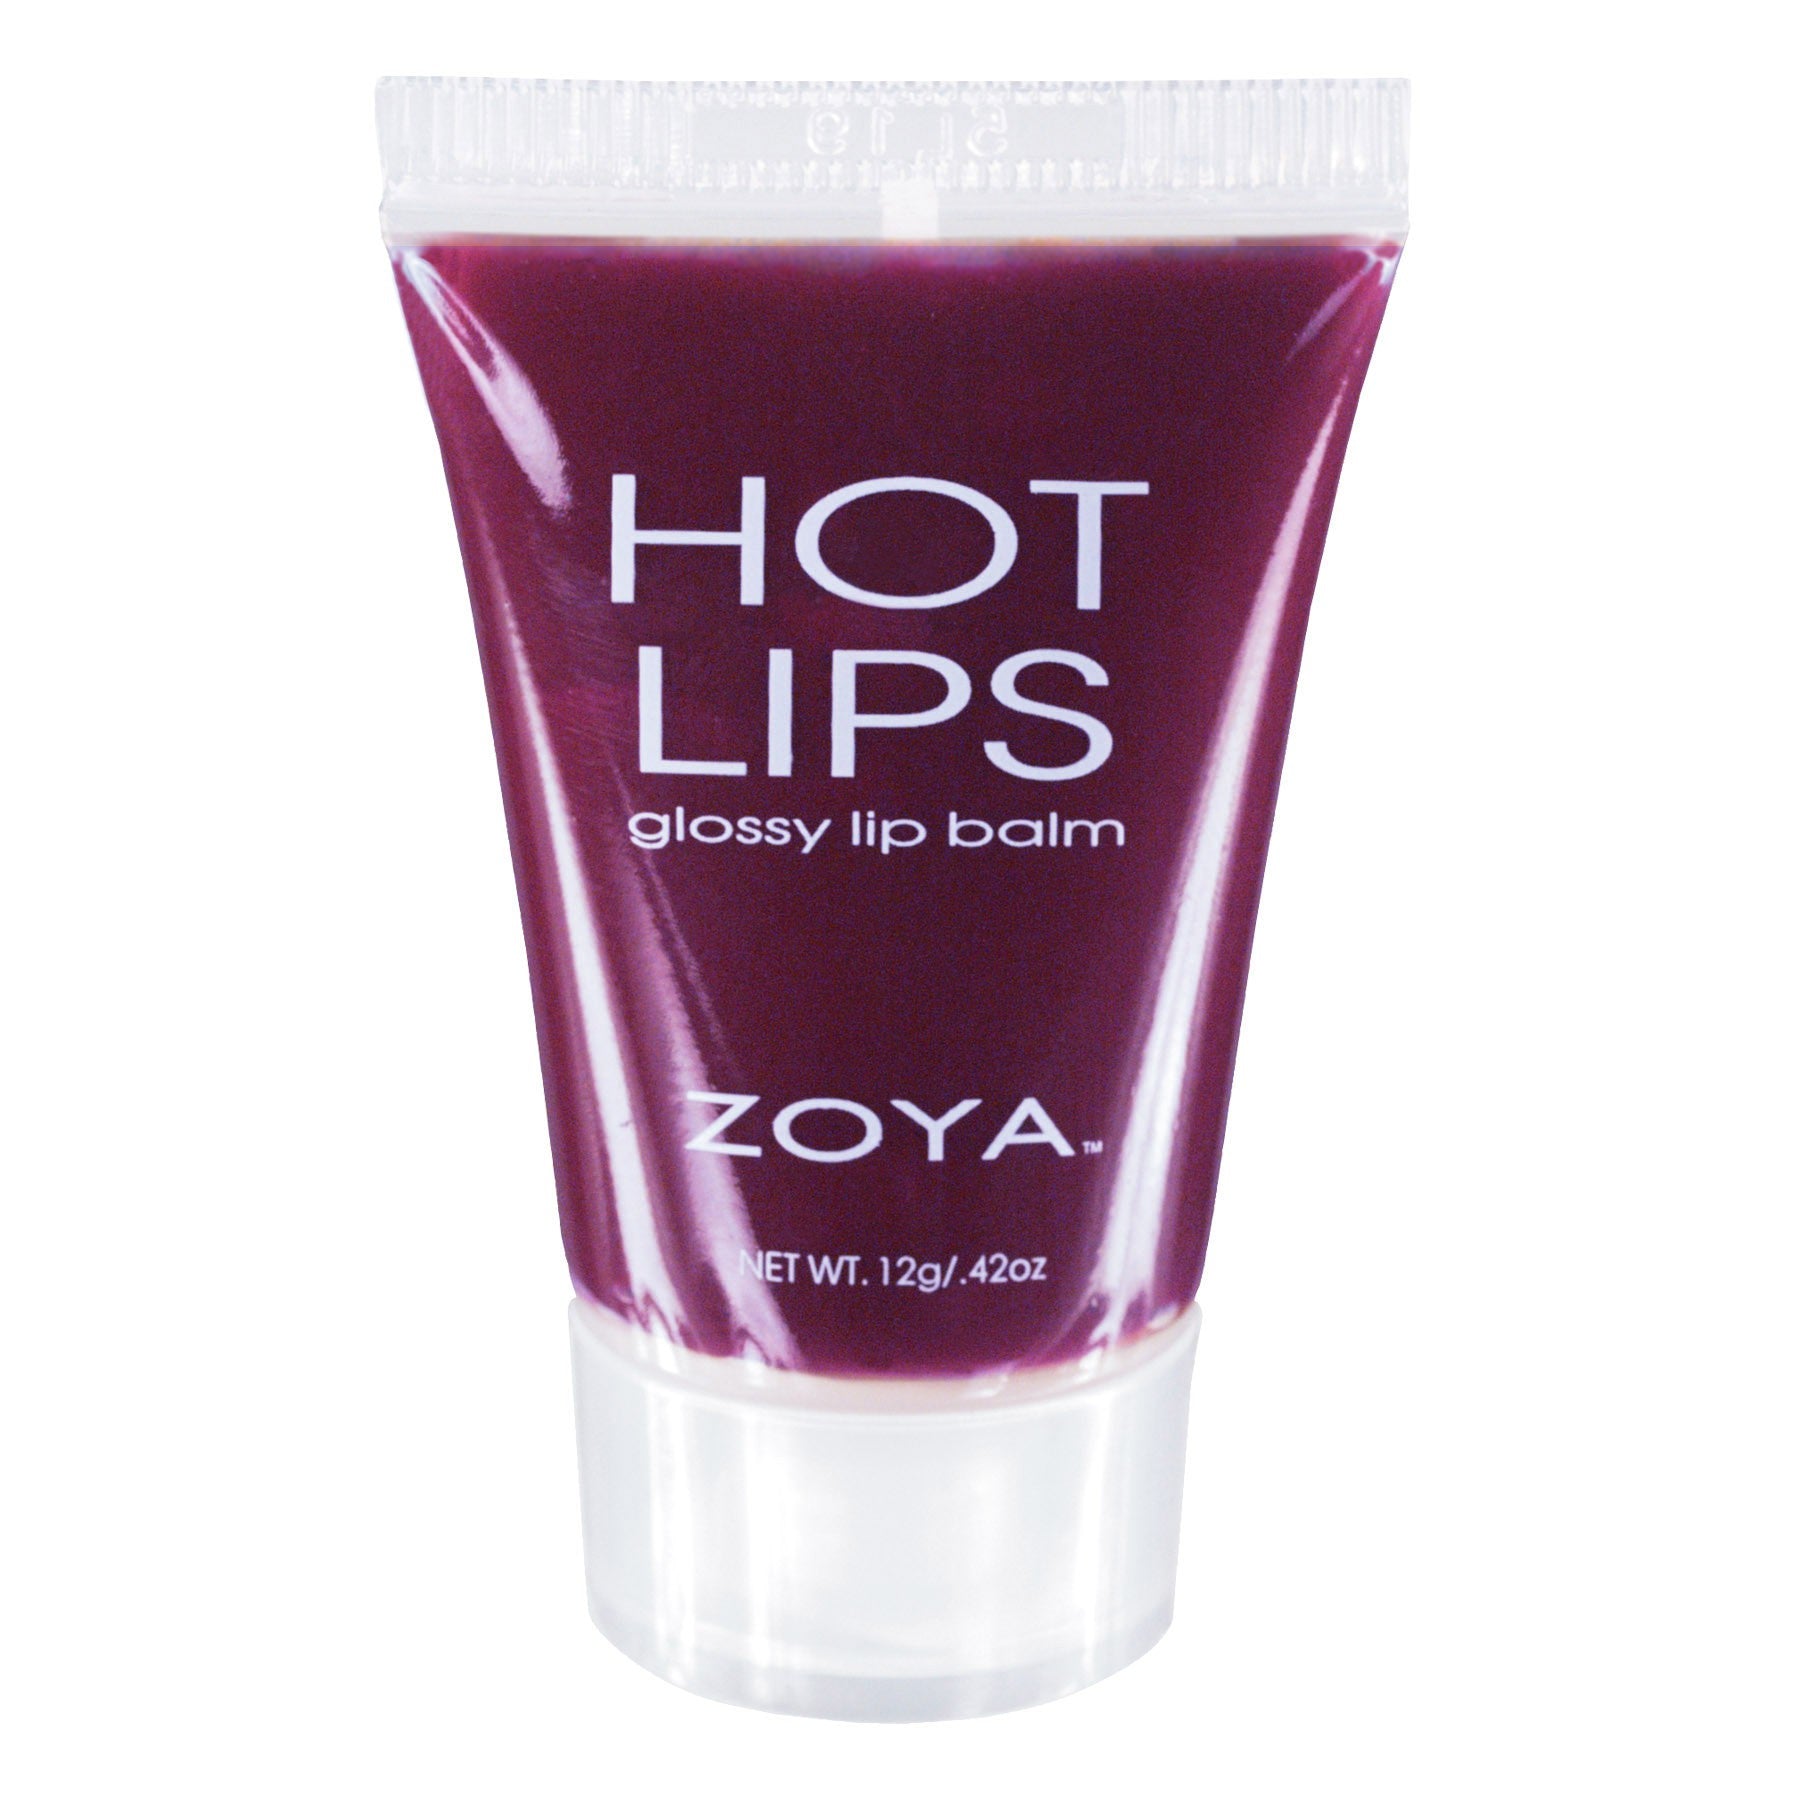 Zoya Hot Lips Visa